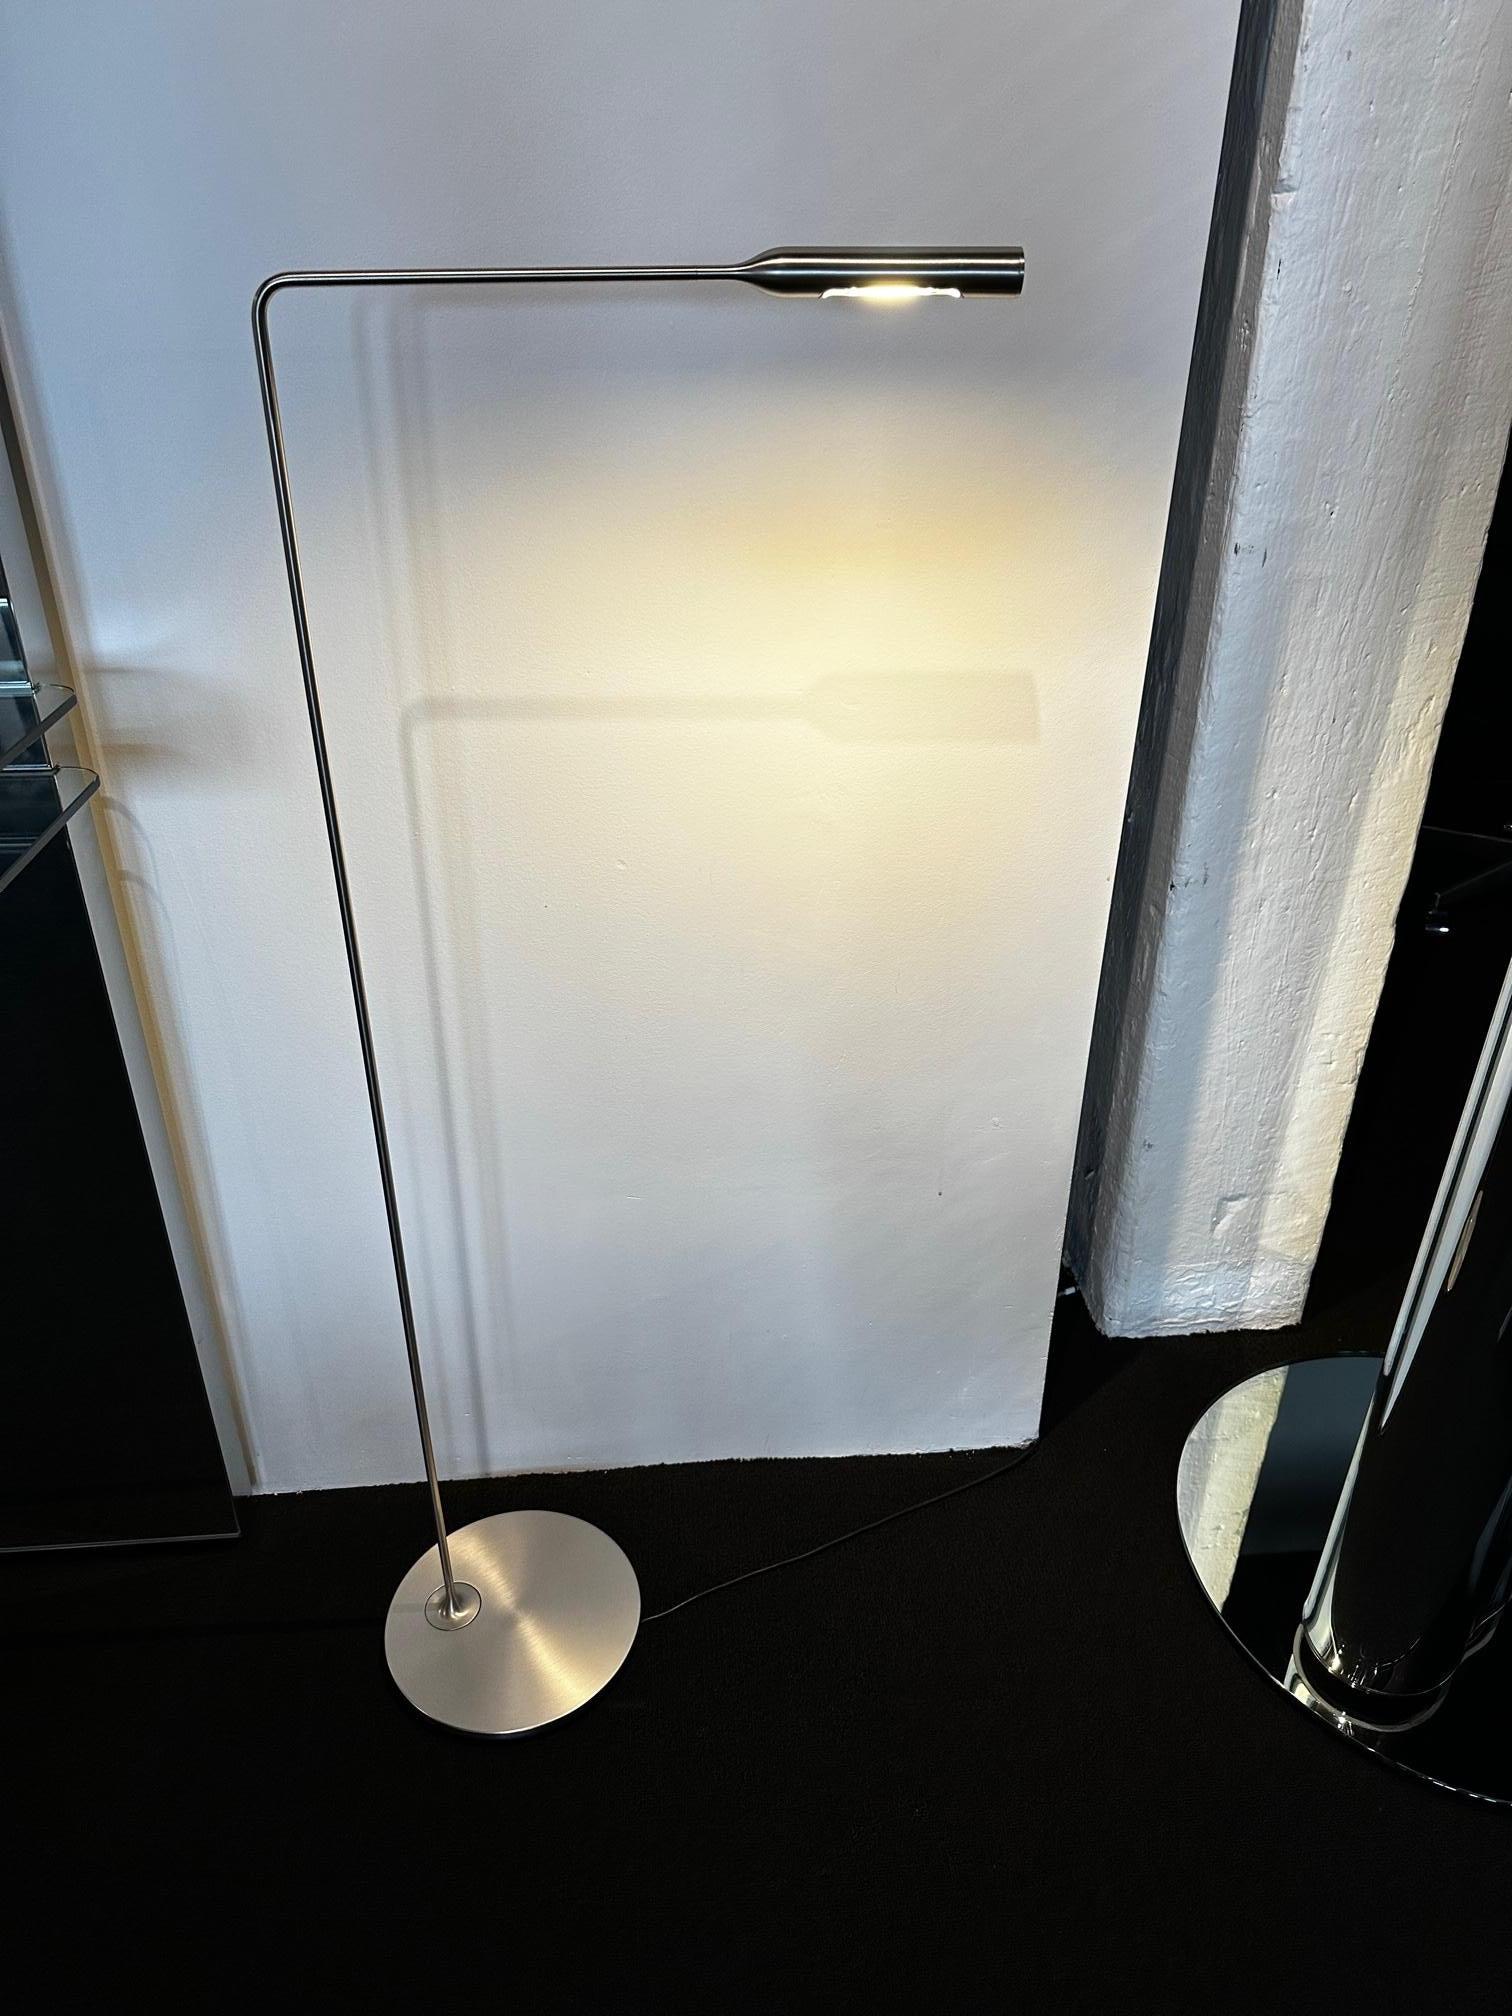 LED 6W
Gradation par bouton-poussoir à 2 niveaux
sur la tête
Parallèlement aux versions de table, Lumina et Foster +Partners ont développé deux lampadaires qui reprennent les caractéristiques qui les définissent.
Le Flo Floor dispose d'une LED de 6W